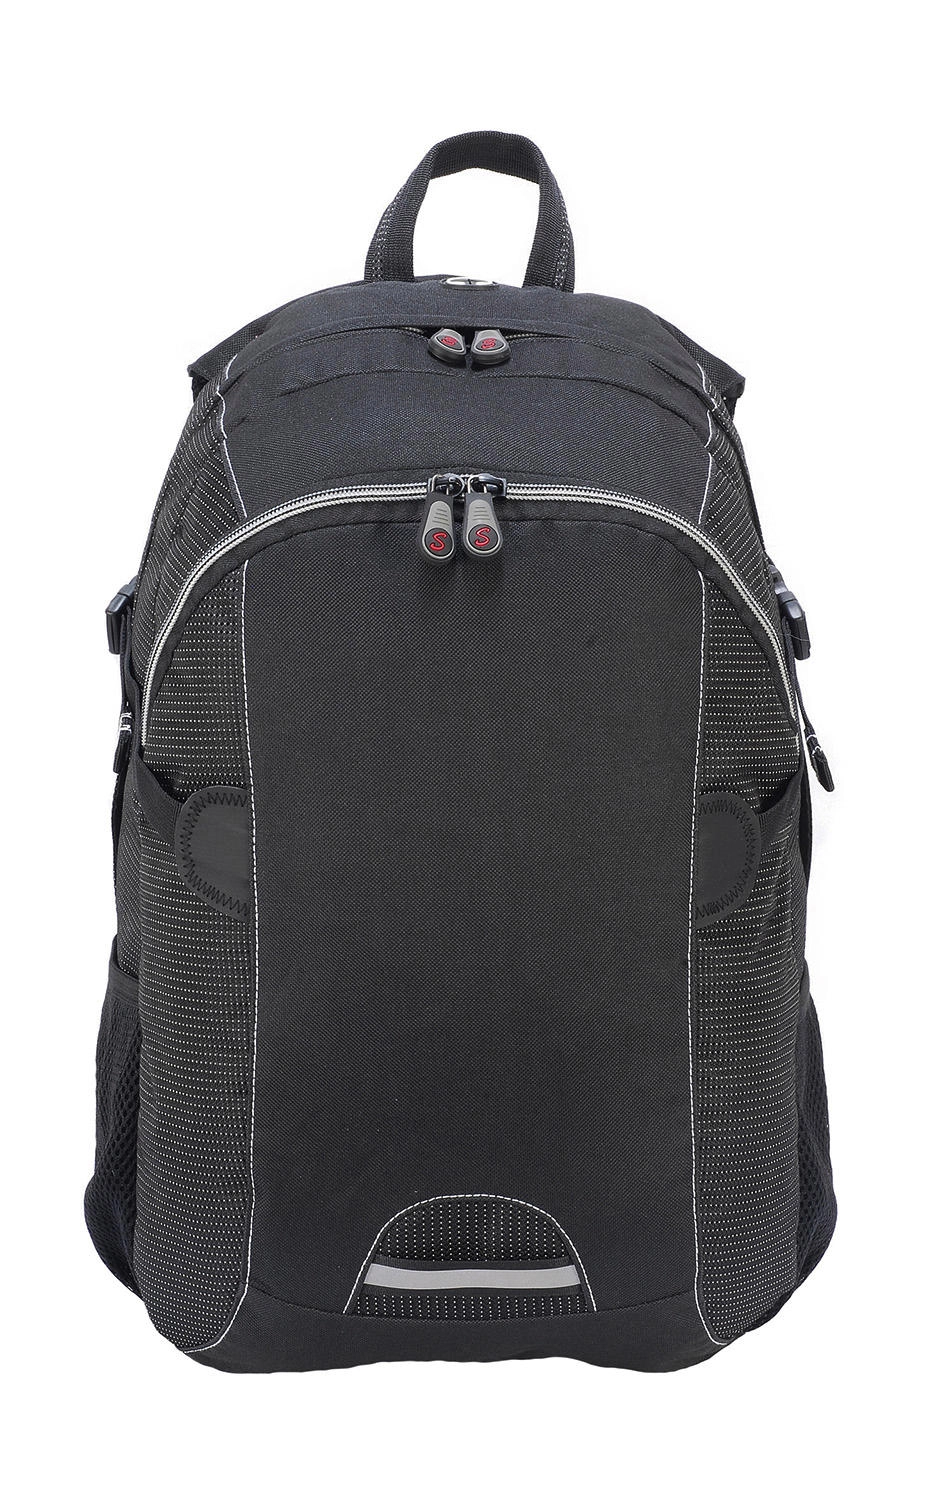 Liverpool Stylish Backpack zum Besticken und Bedrucken in der Farbe Black mit Ihren Logo, Schriftzug oder Motiv.